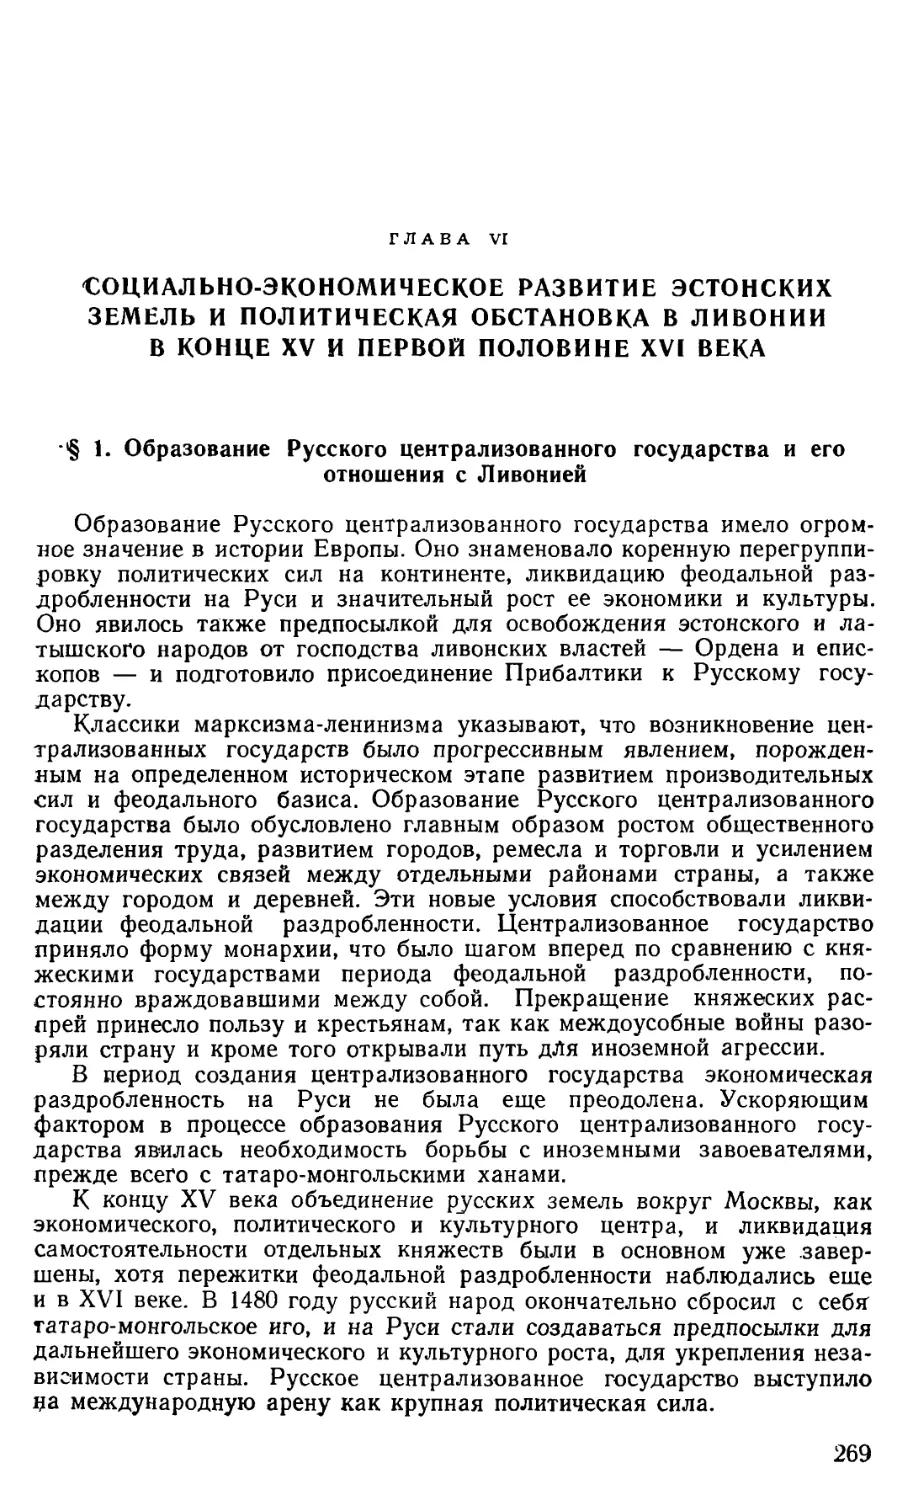 § 1. Образование Русского централизованного государства и его отношения с Ливонией